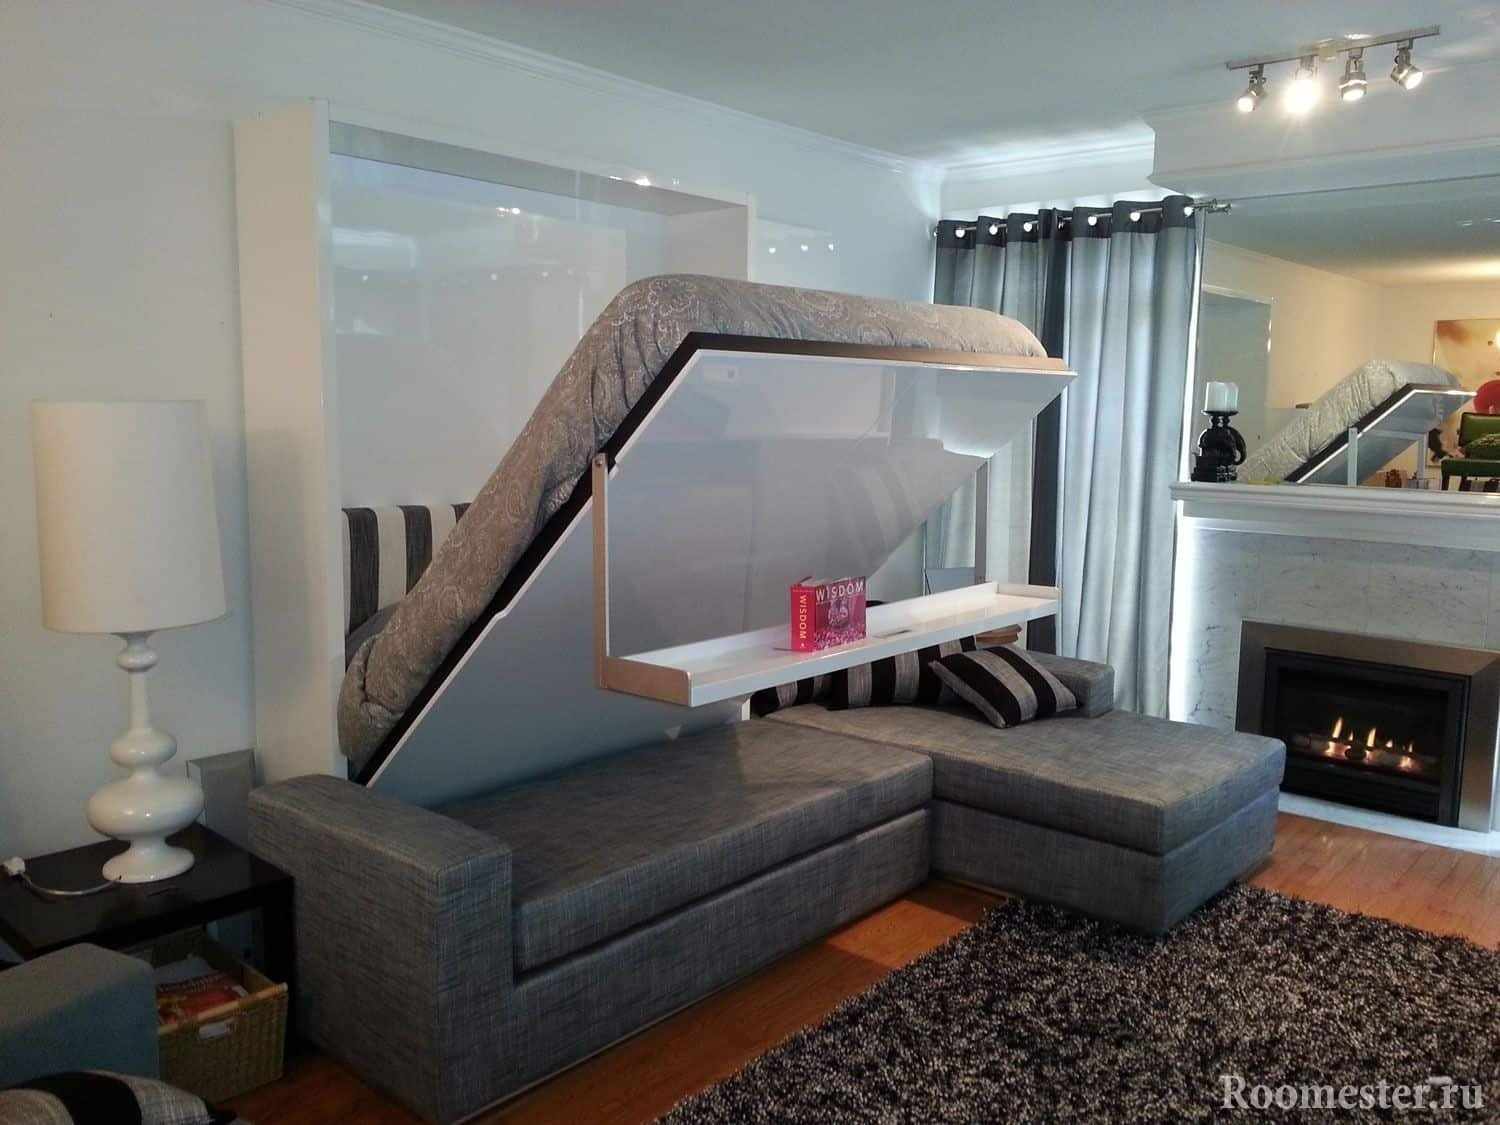 Диван-кровать, удобный трансформер для совмещенной гостиной и спальни